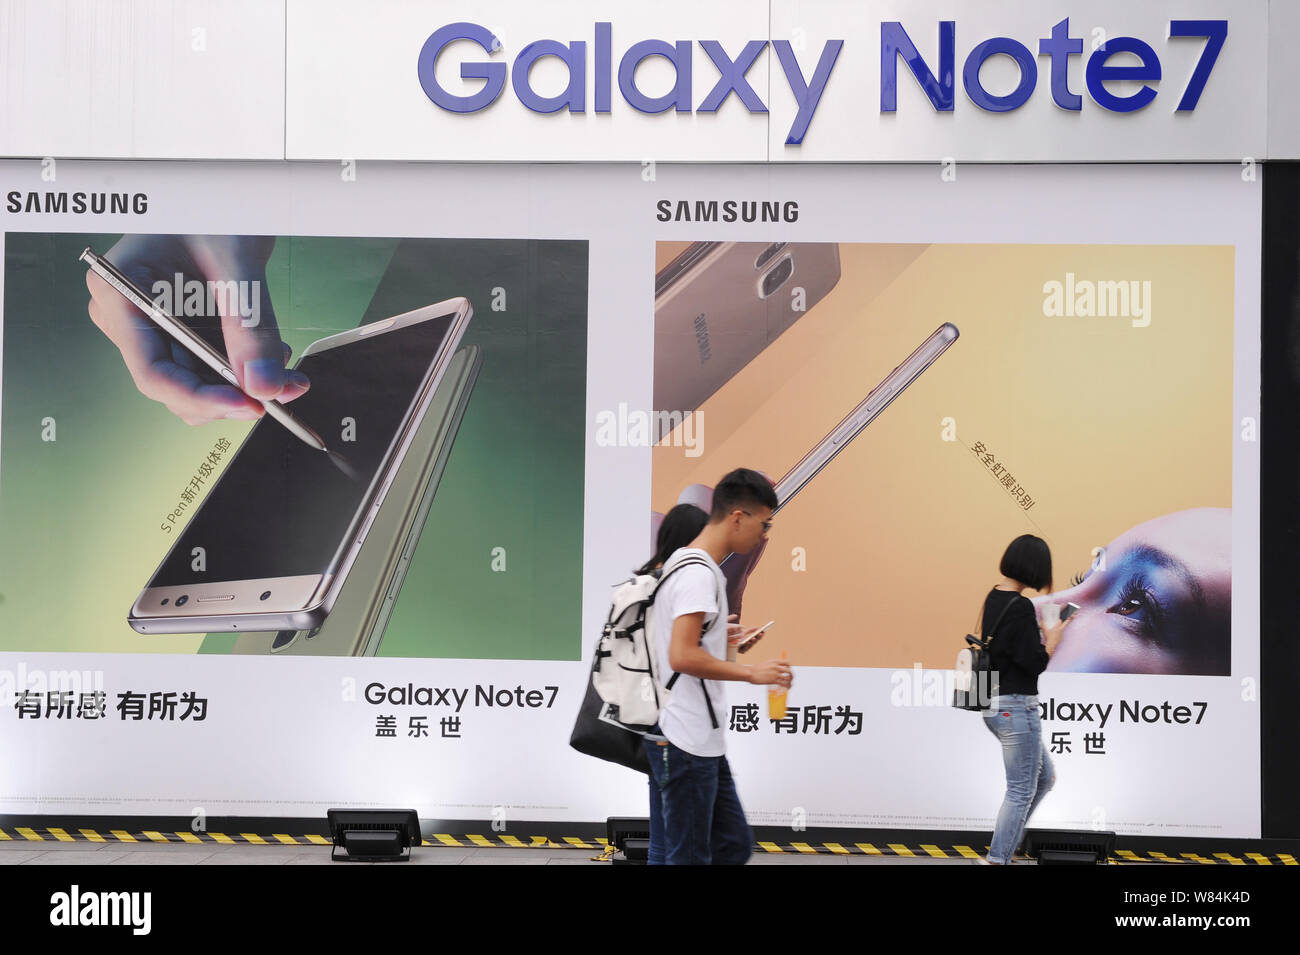 Samsung galaxy note 7 immagini e fotografie stock ad alta risoluzione -  Alamy